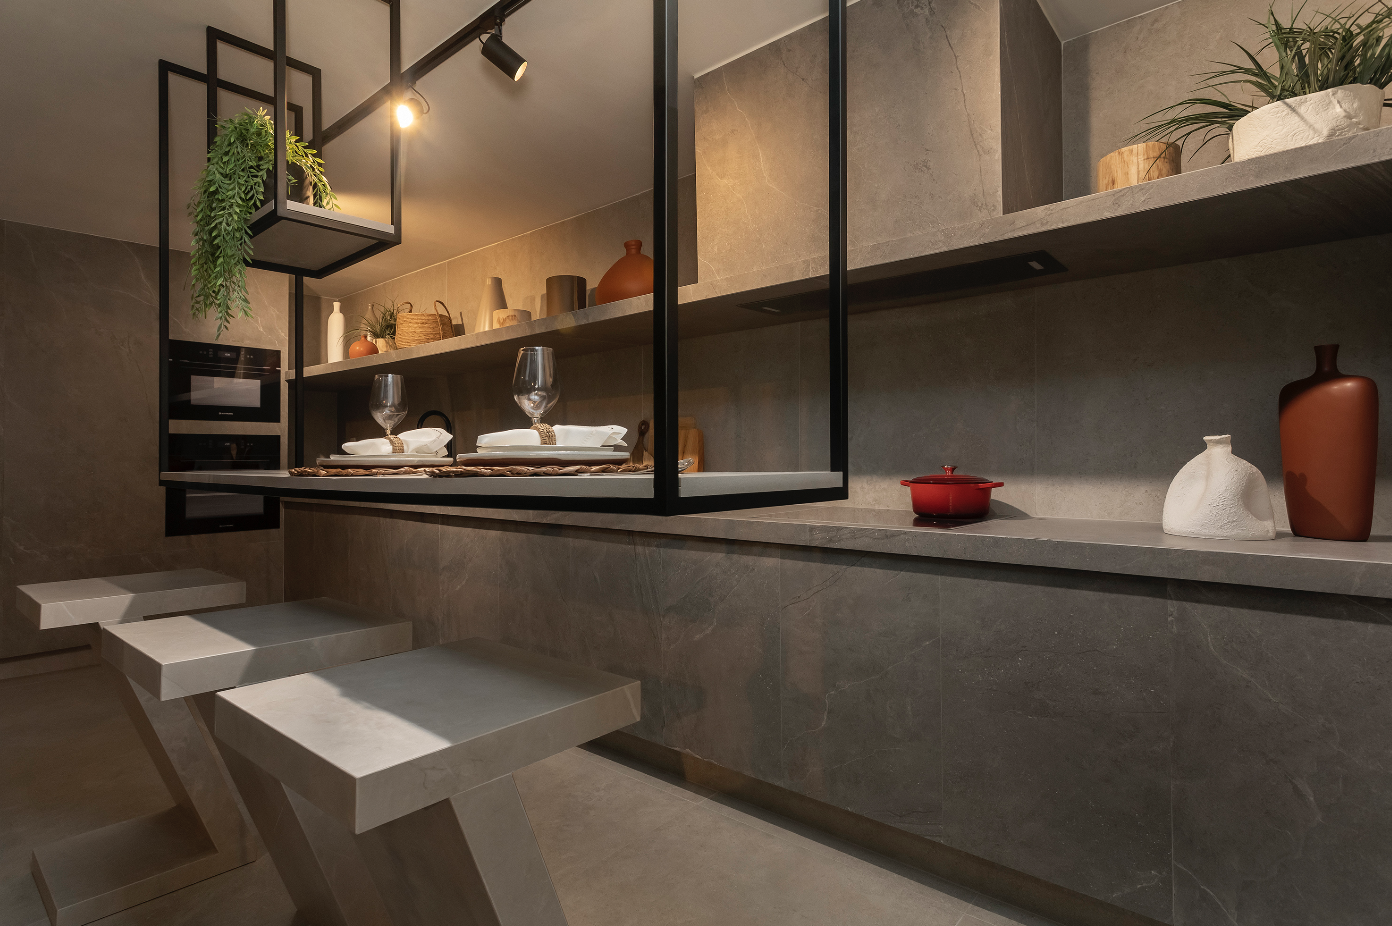 Sala de jantar moderna com bancos retangulares de cimento e mesa suspensa por estrutura de ferro. Ao lado, armário com vasos e plantas